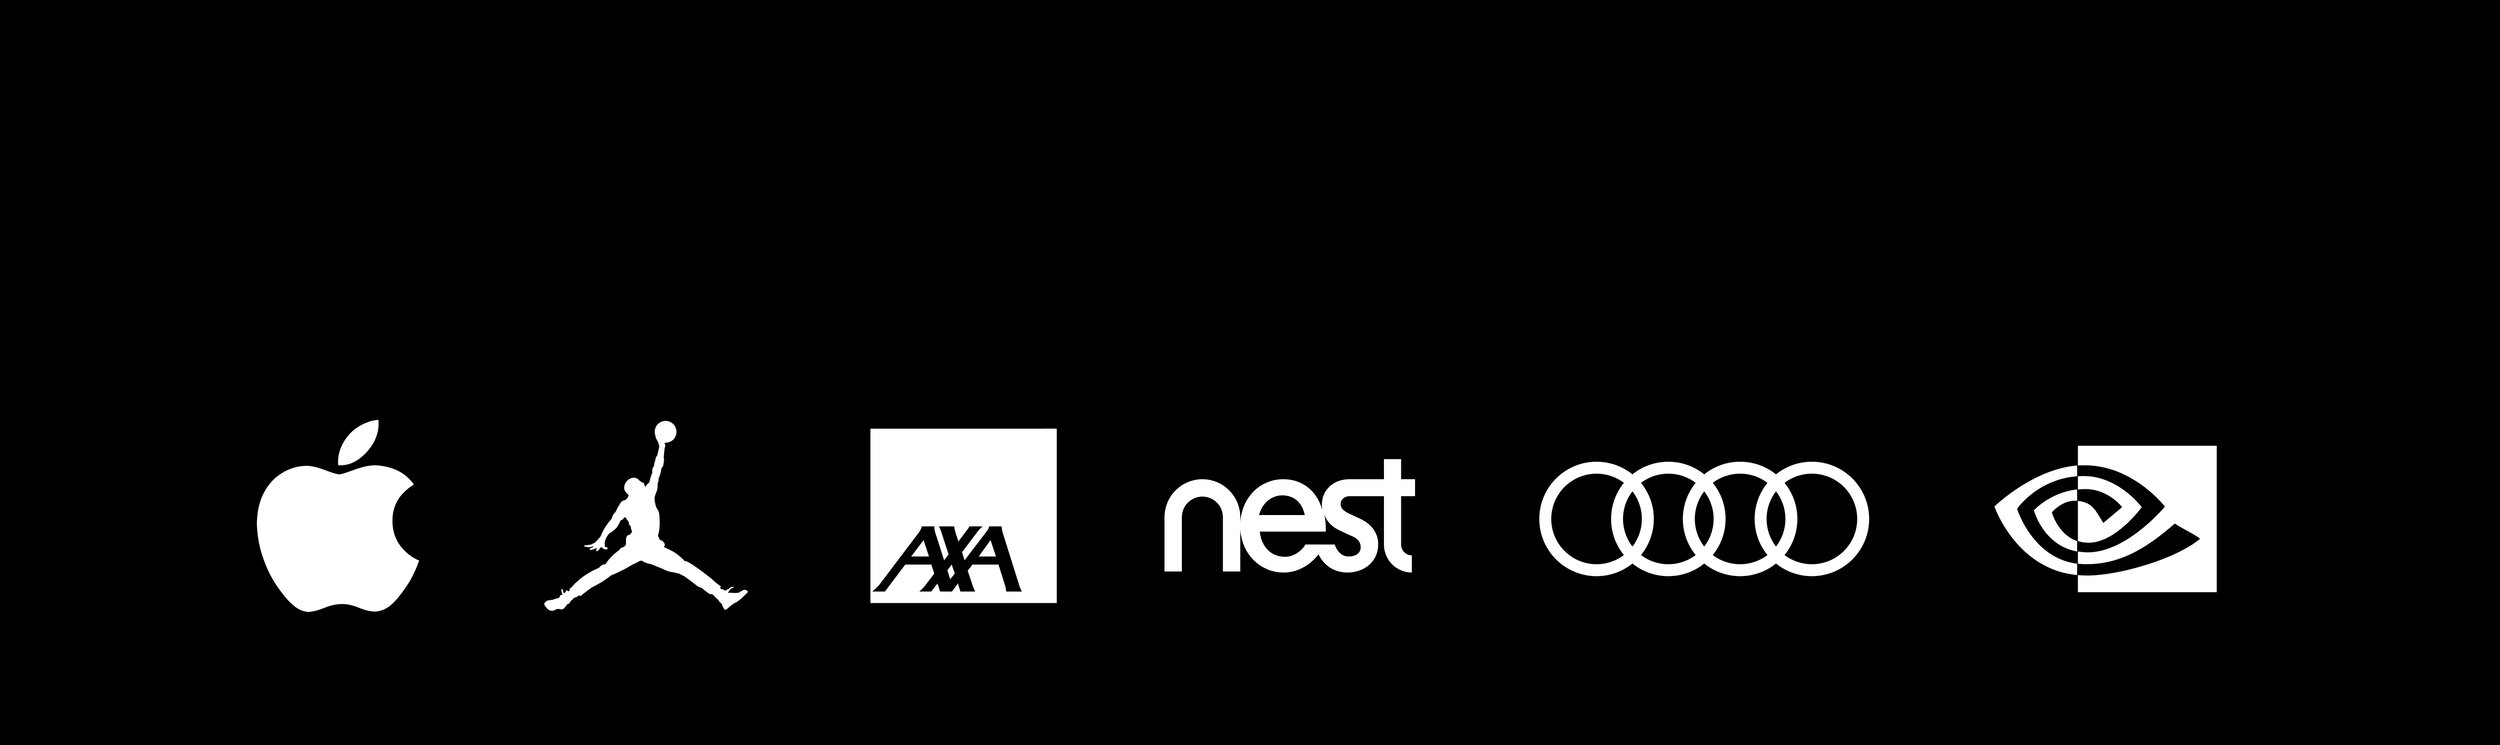 AKQA Client Logos